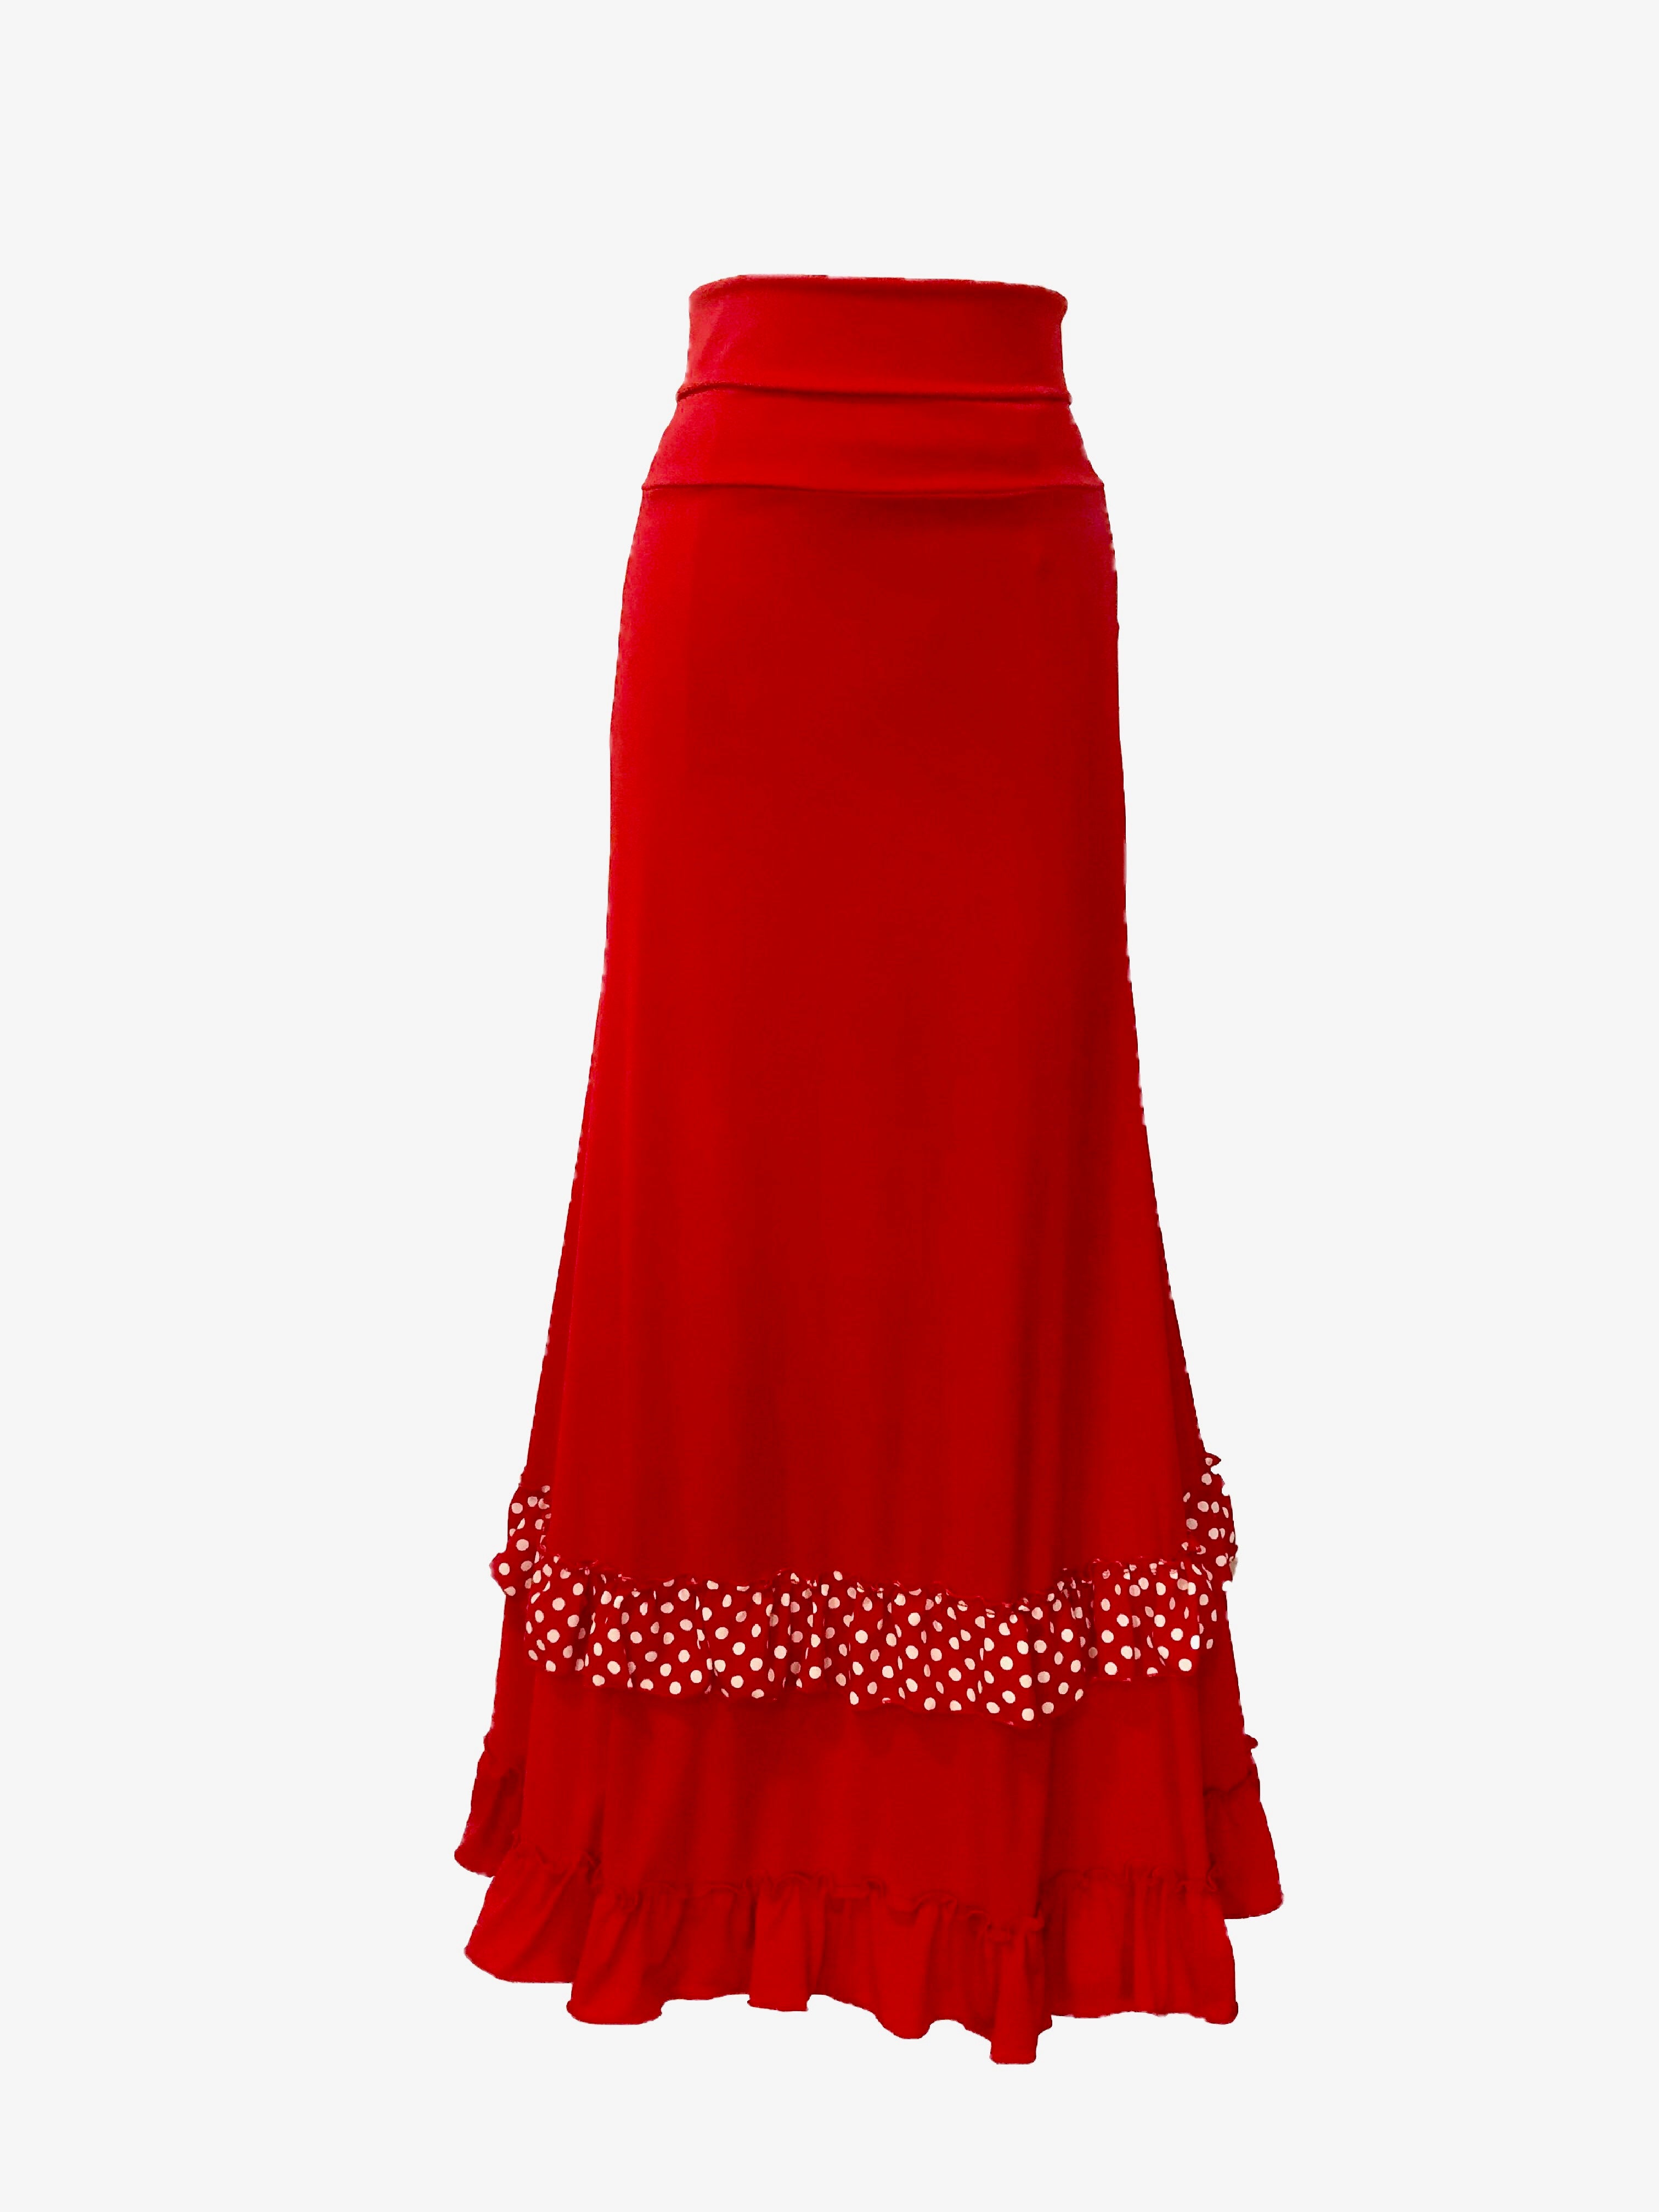 Faldas flamencas de ensayo - Flamencista